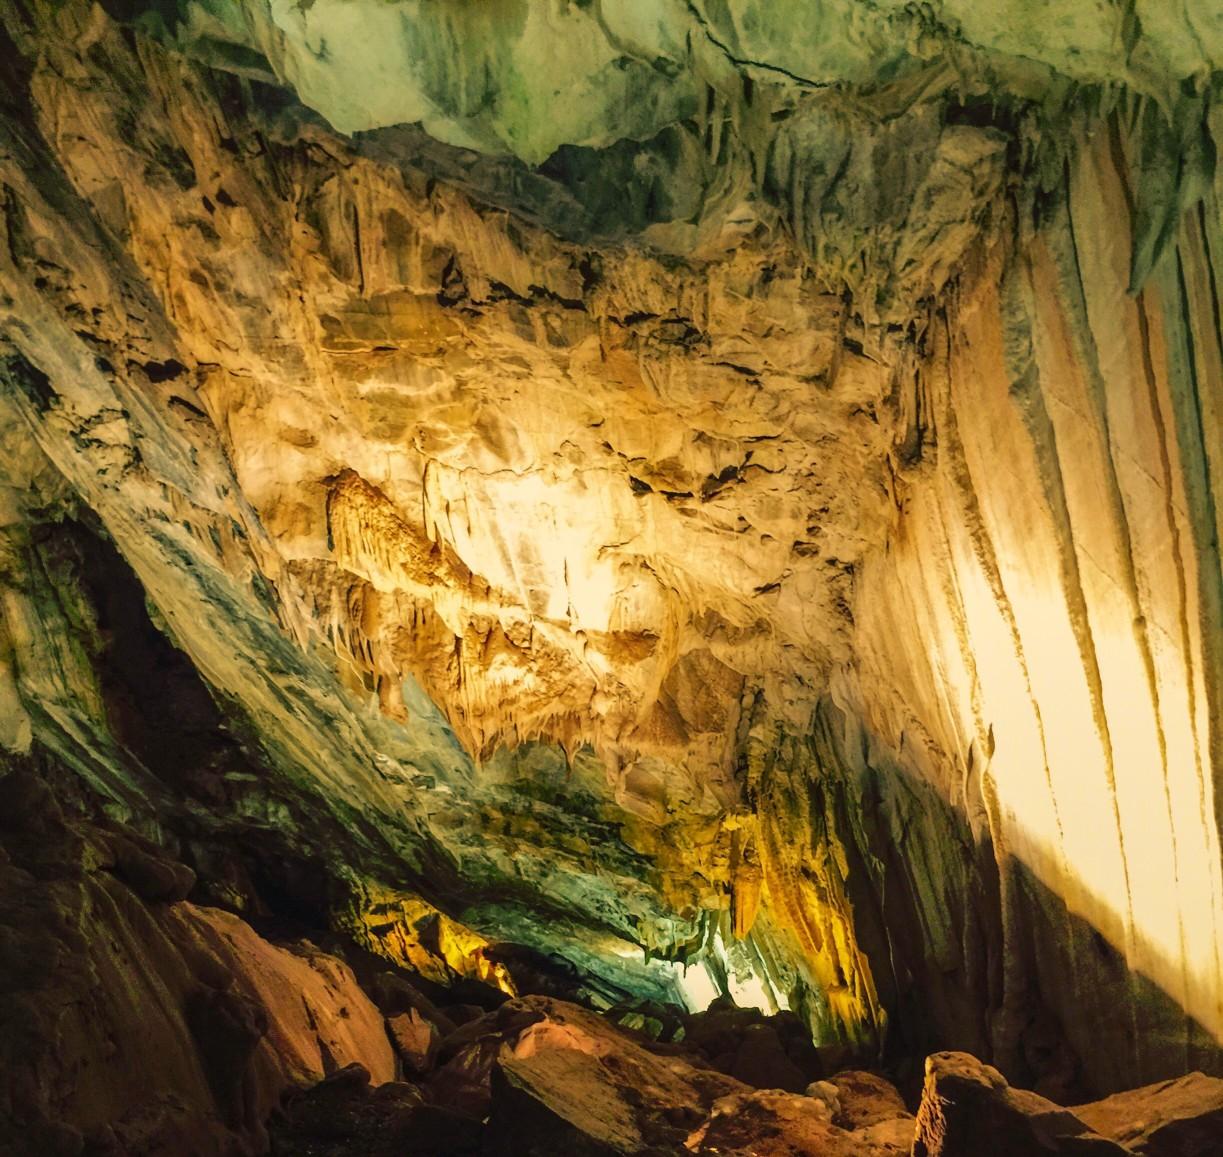 Mercer Caves